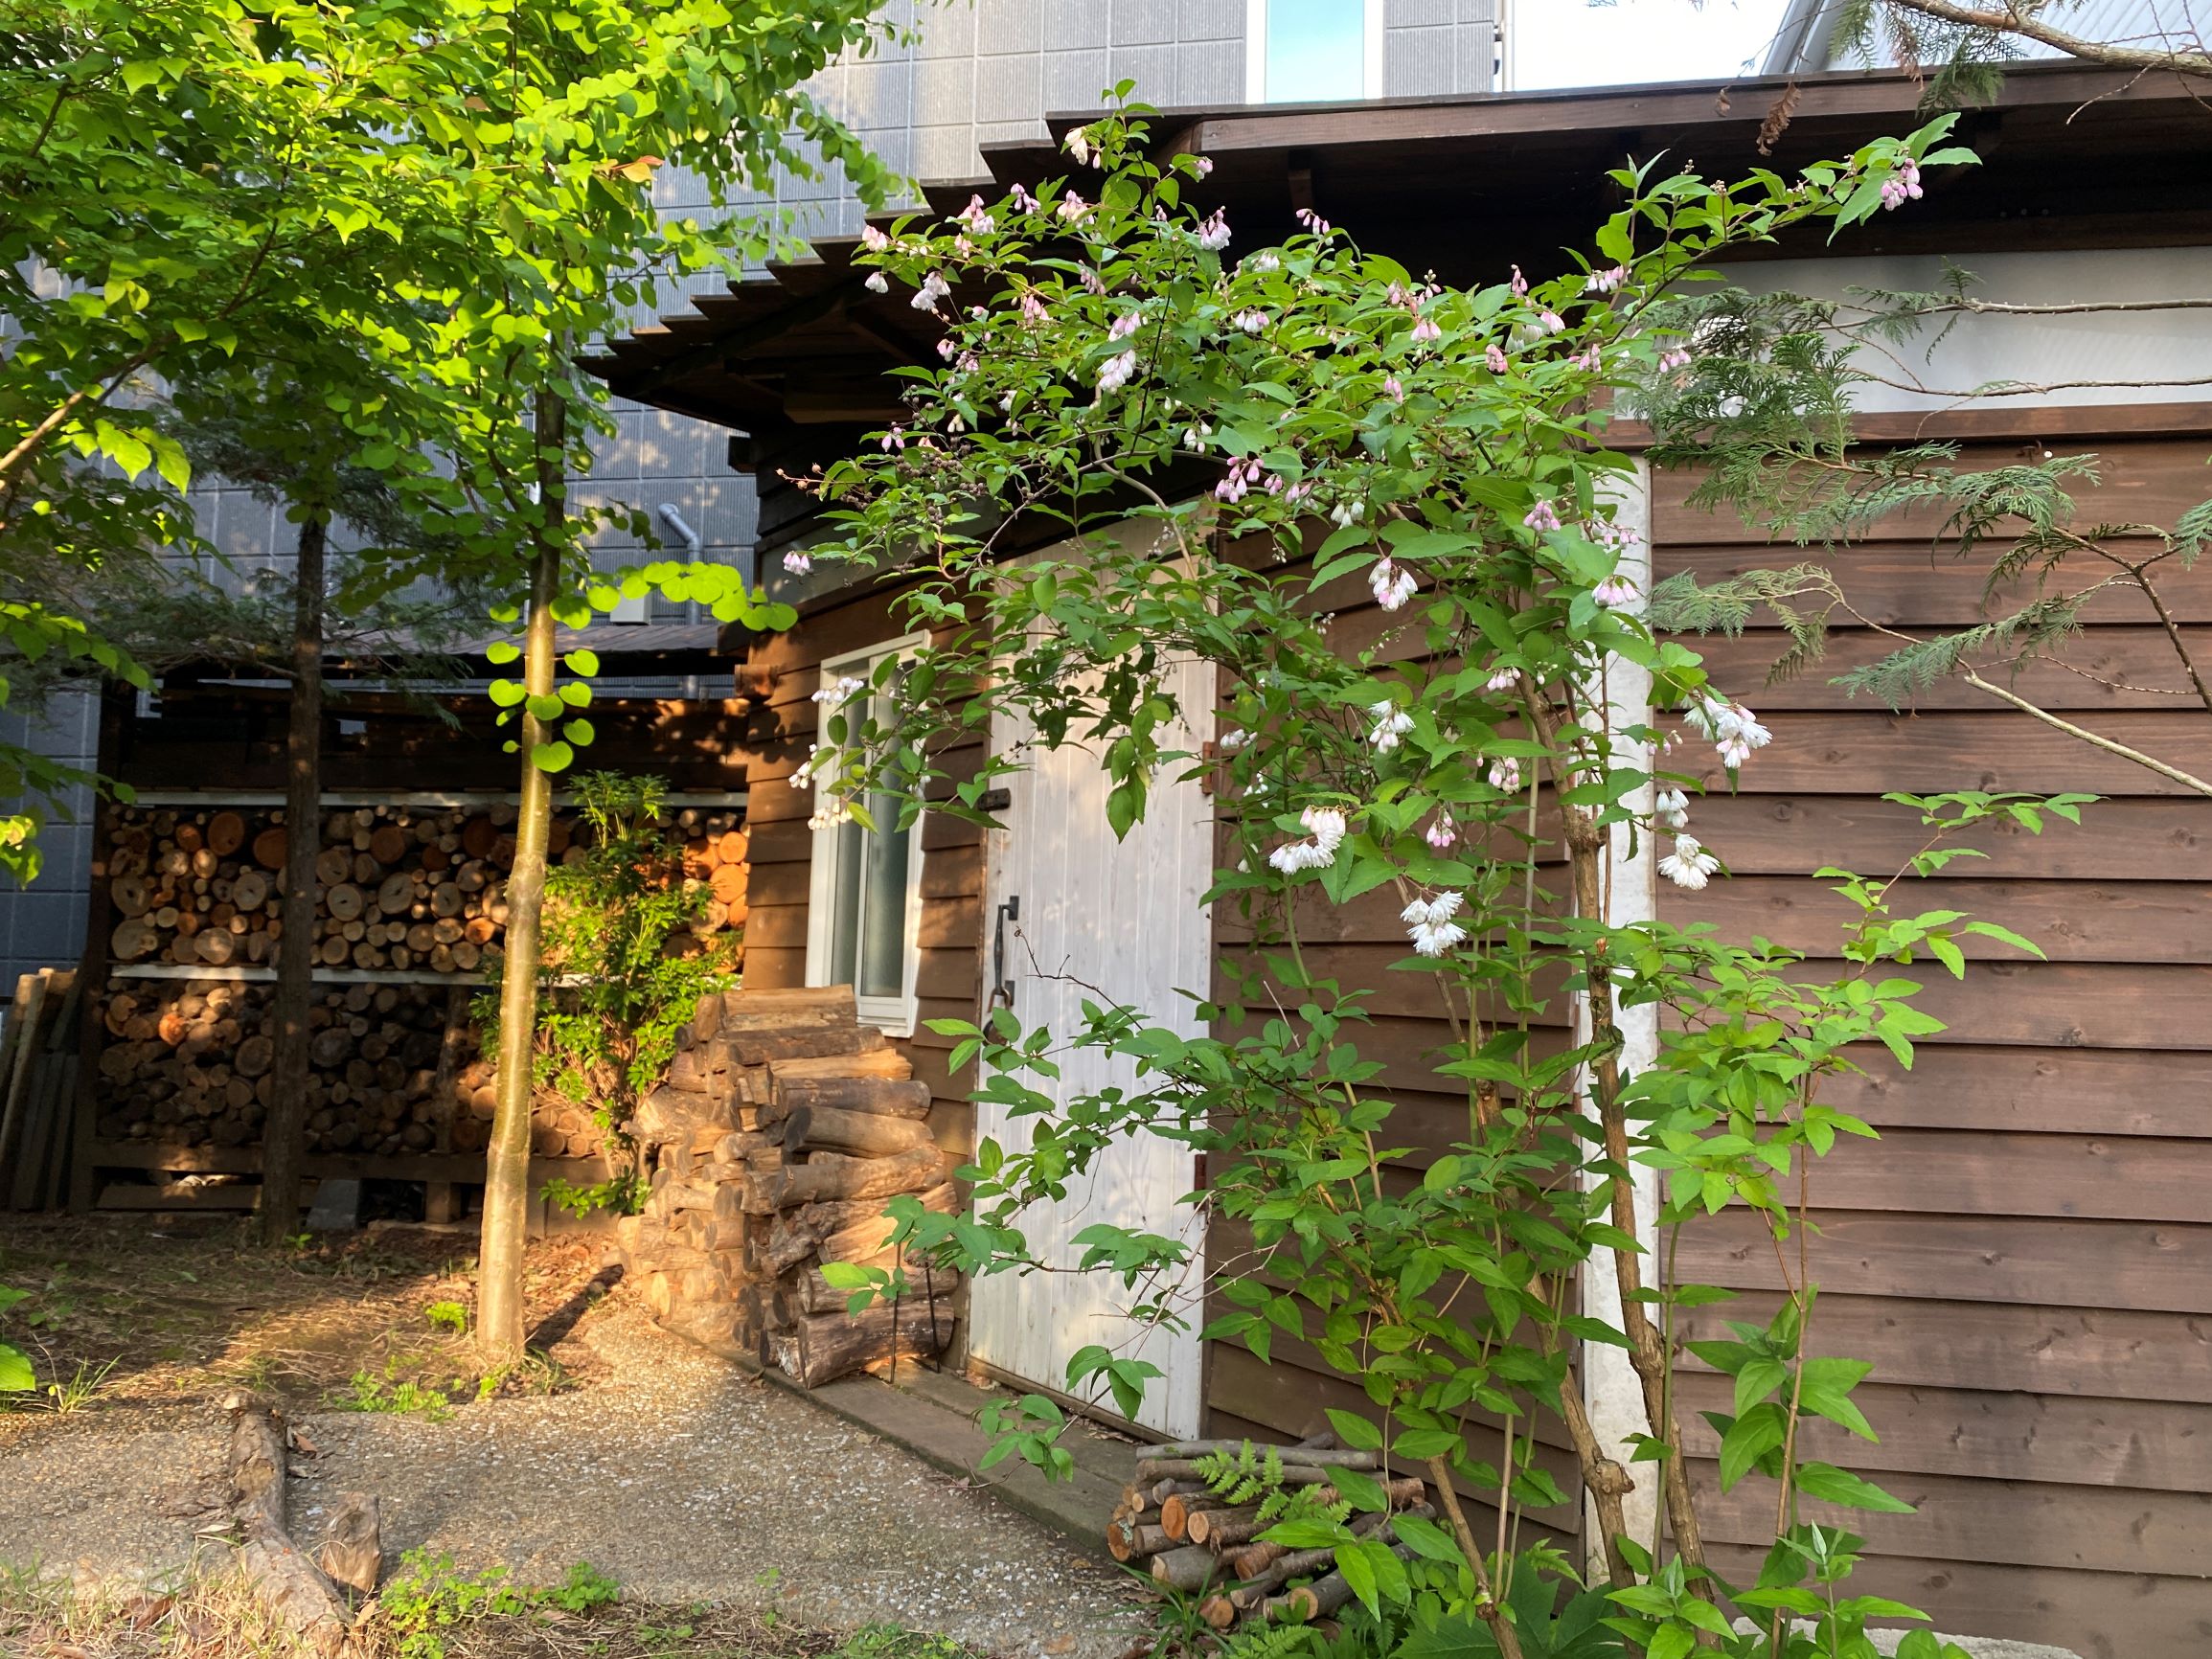 神奈川県相模原市 幹制作所アトリエ雑木と山野草の庭づくり 小屋のある庭づくり ウッドデッキテラスの庭づくり 雑木の庭の四季を感じる庭づくり 幹制作所